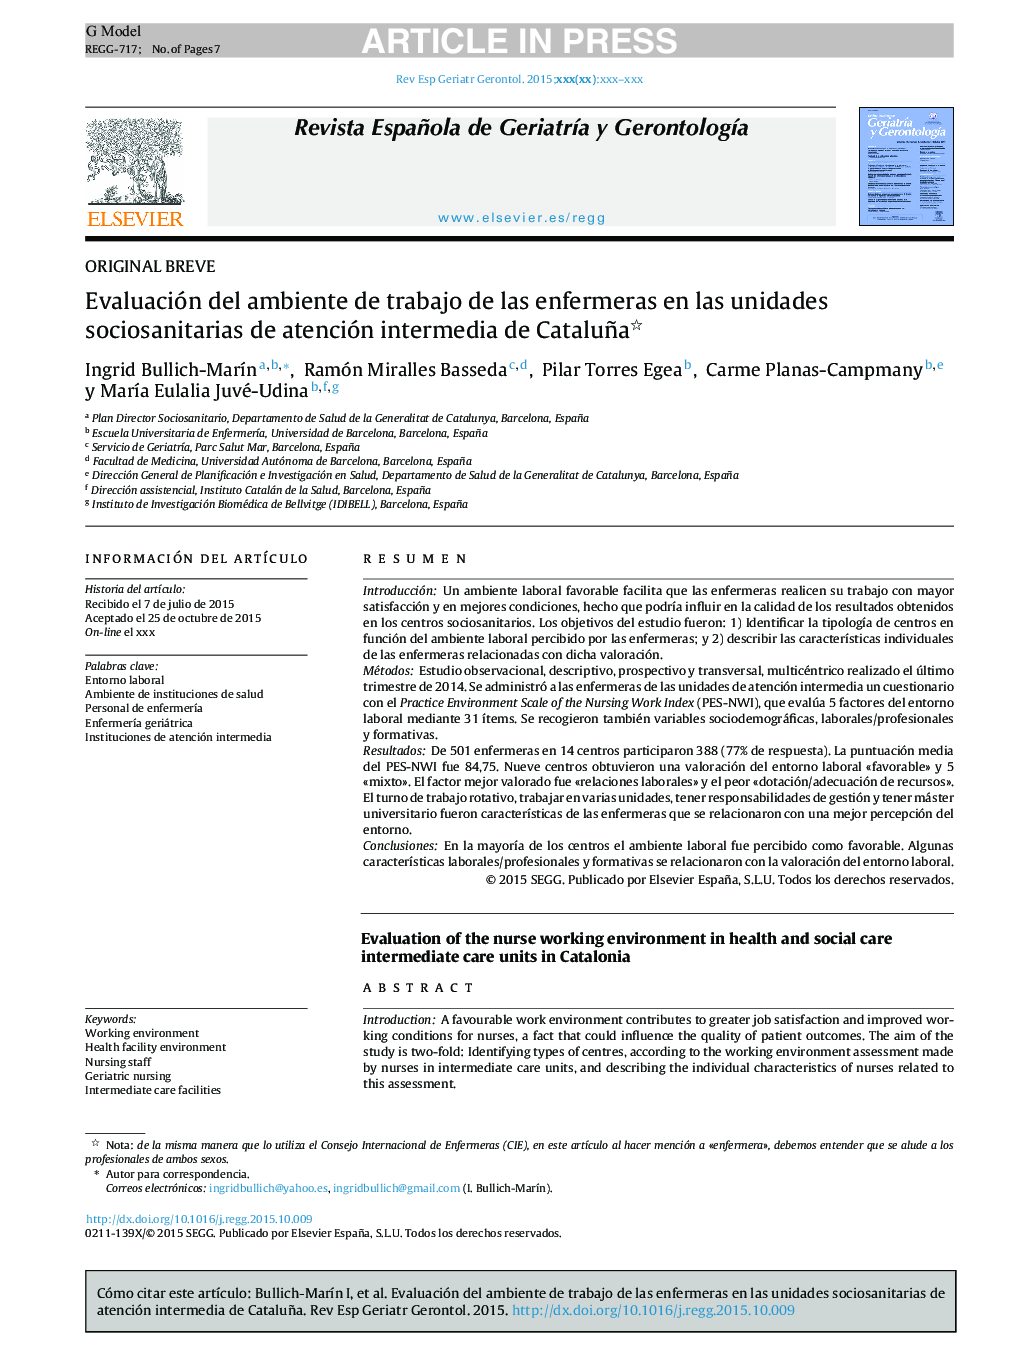 Evaluación del ambiente de trabajo de las enfermeras en las unidades sociosanitarias de atención intermedia de Cataluña